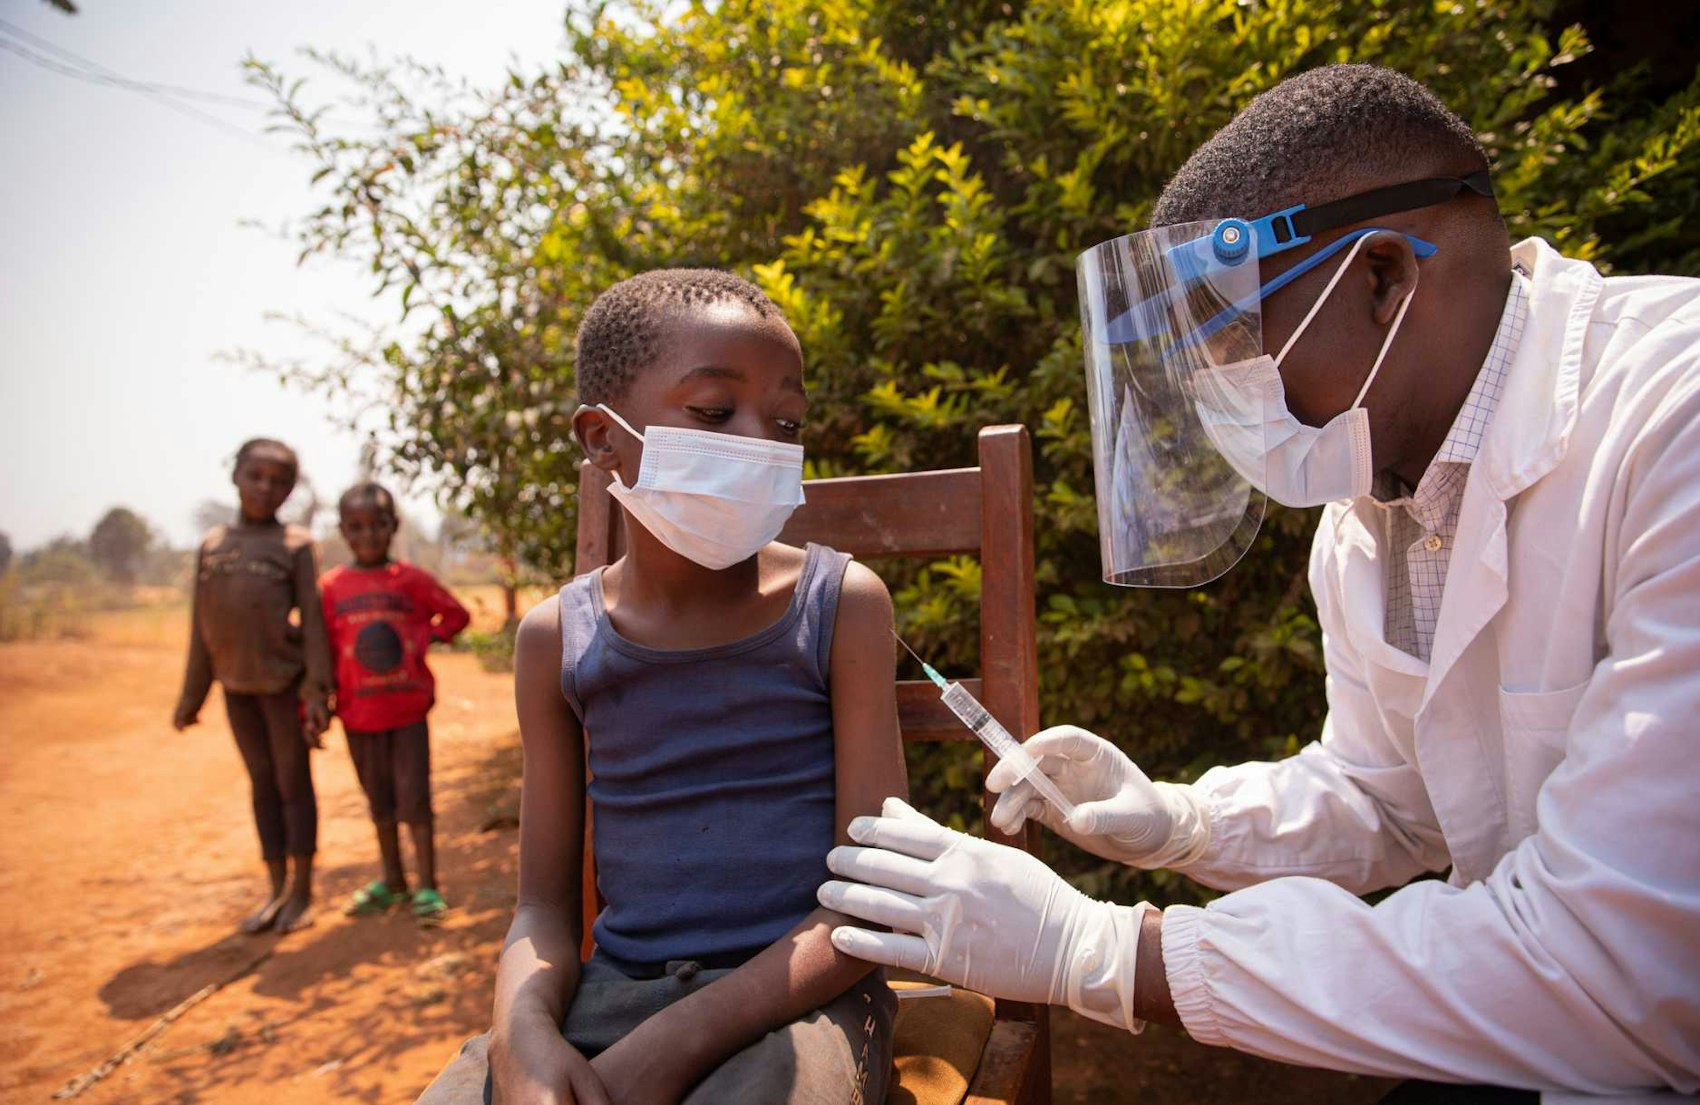 Arzt mit Schutzvisier impft ein Kind in einem afrikanischem Dorf